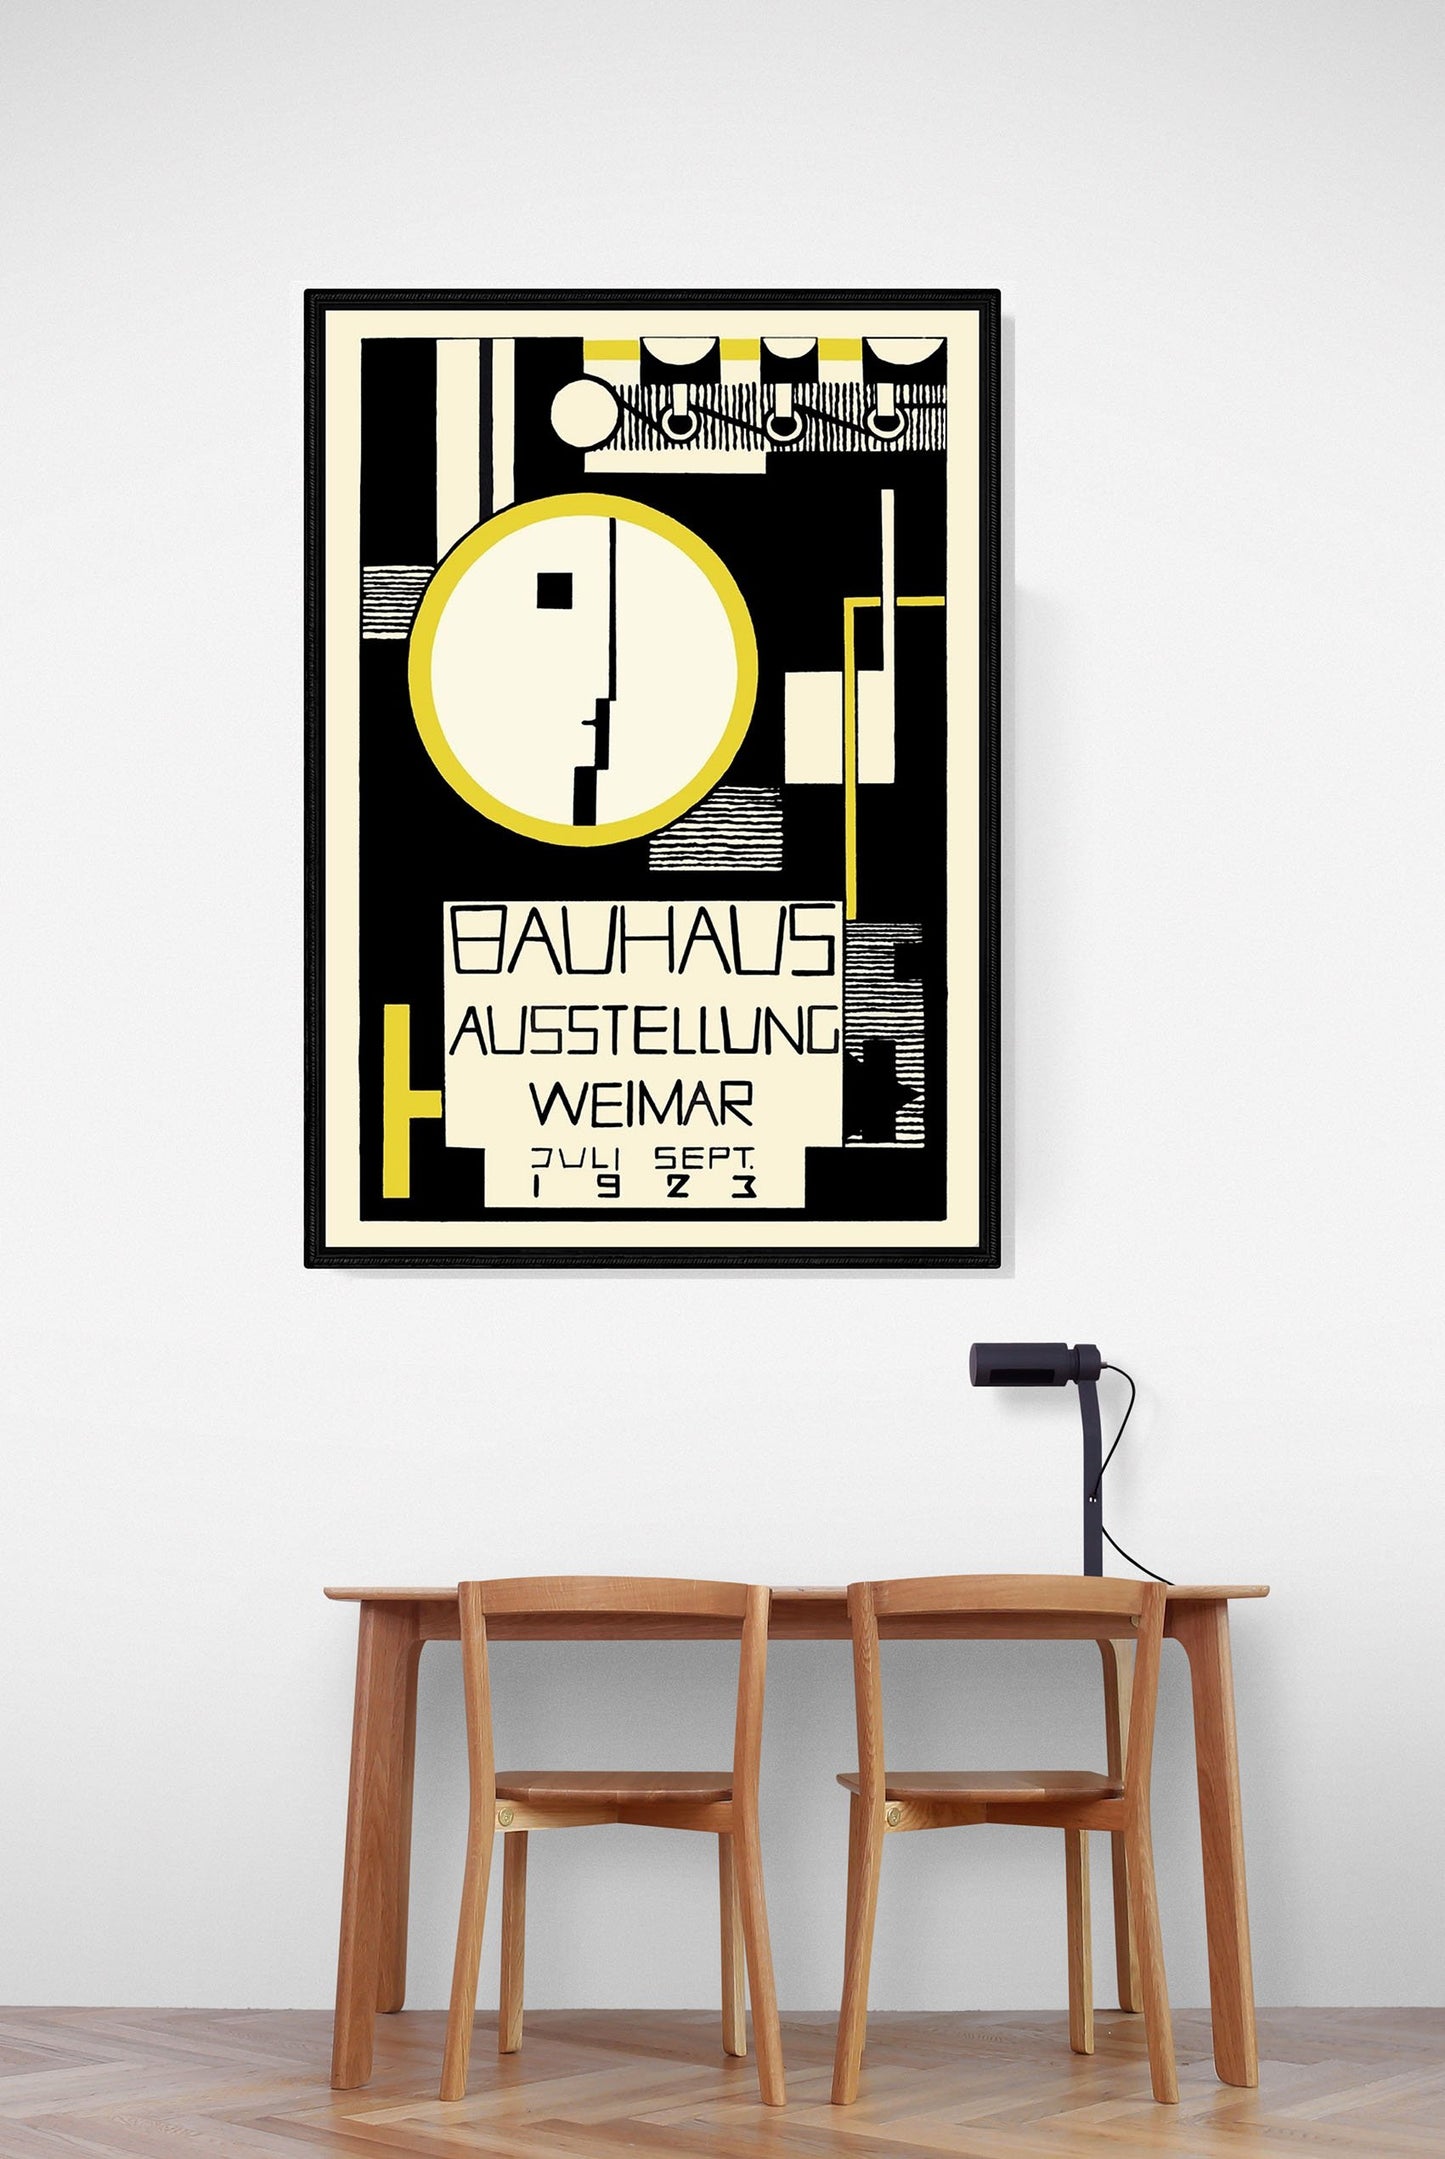 Bauhaus art exhibition poster, Bauhaus poster by Joost Schmidt